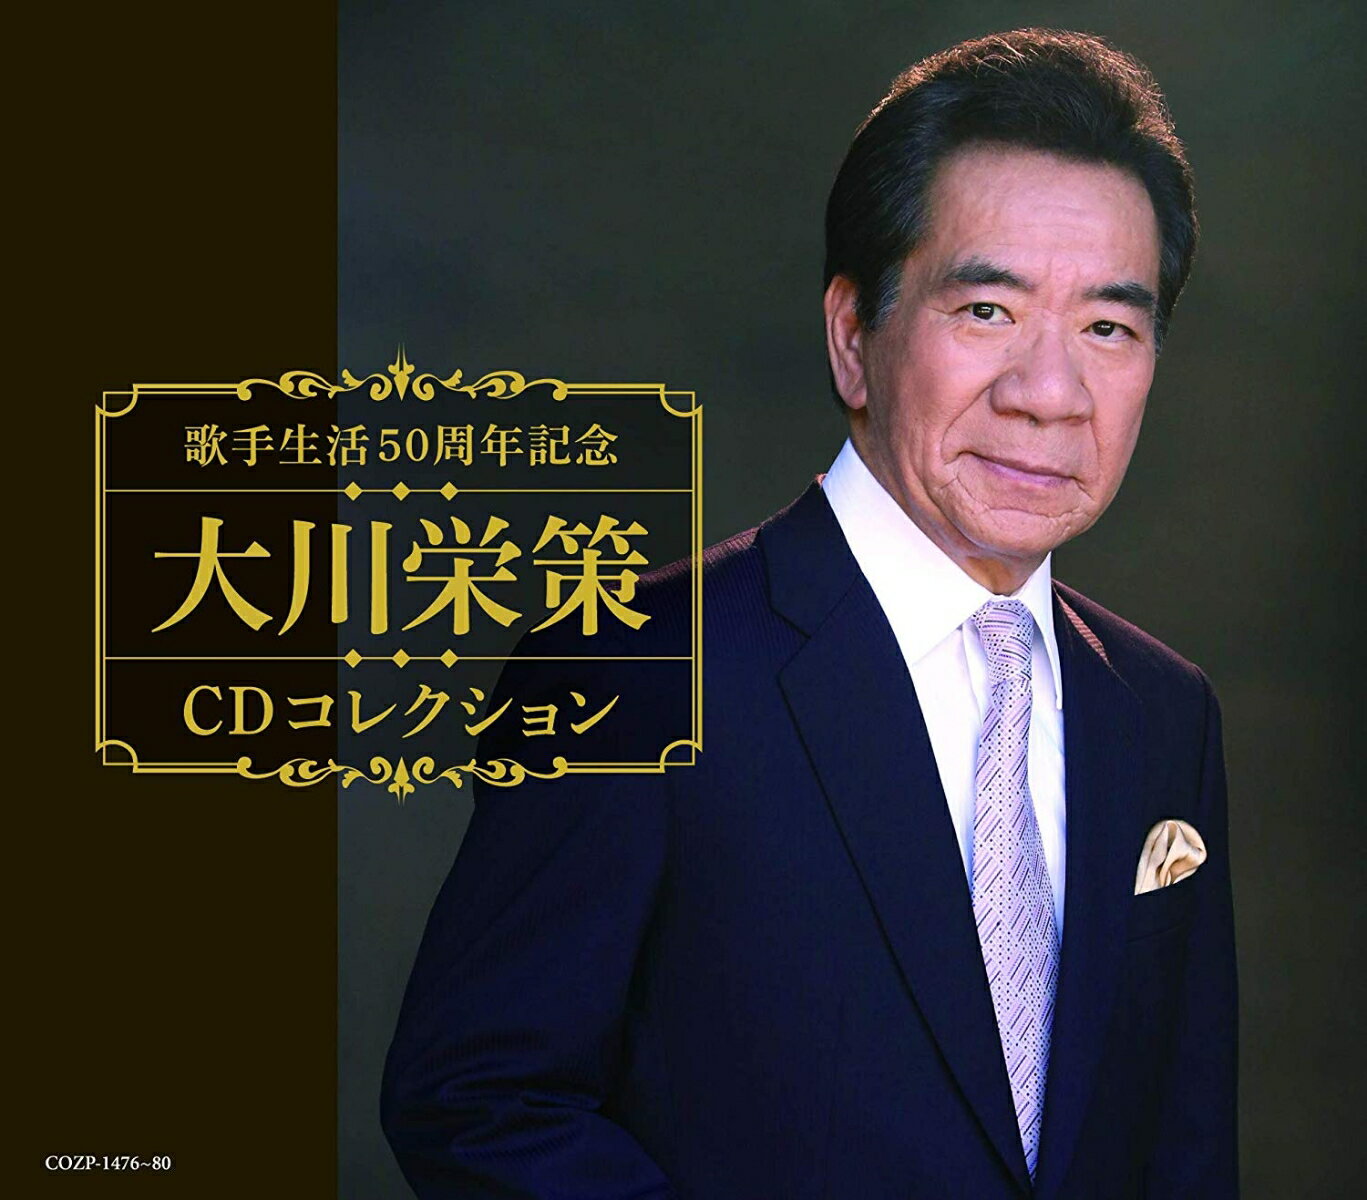 歌手生活50周年記念 大川栄策CDコレクション